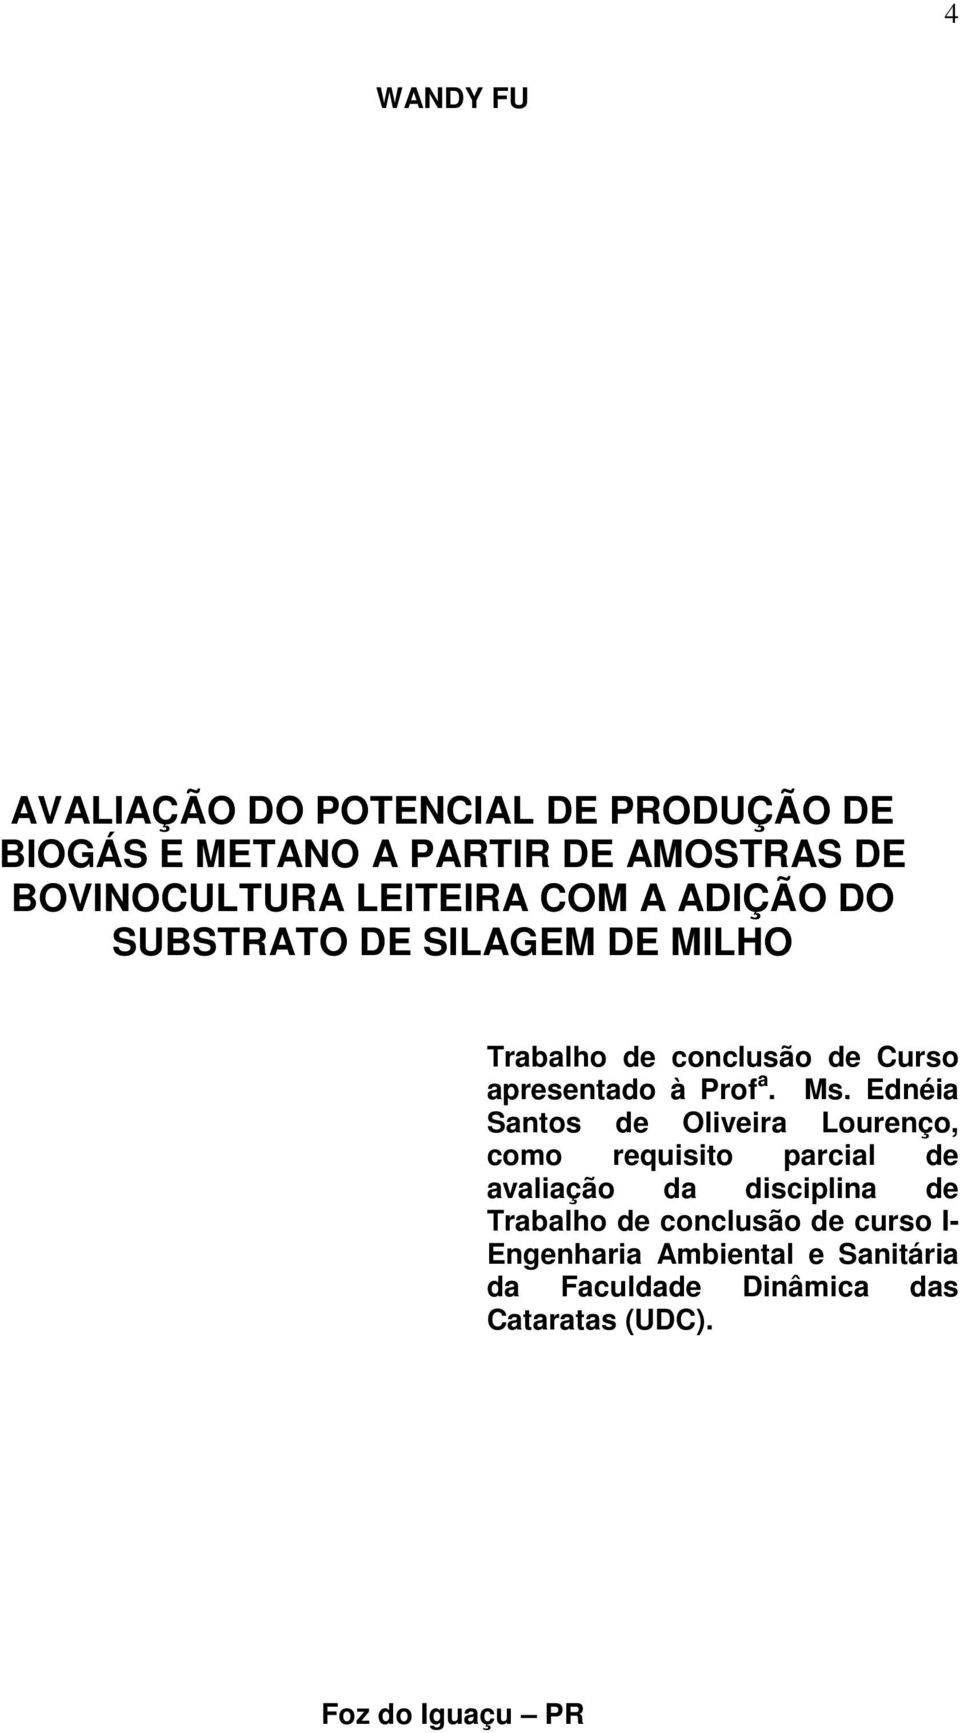 Ms. Ednéia Santos de Oliveira Lourenço, como requisito parcial de avaliação da disciplina de Trabalho de